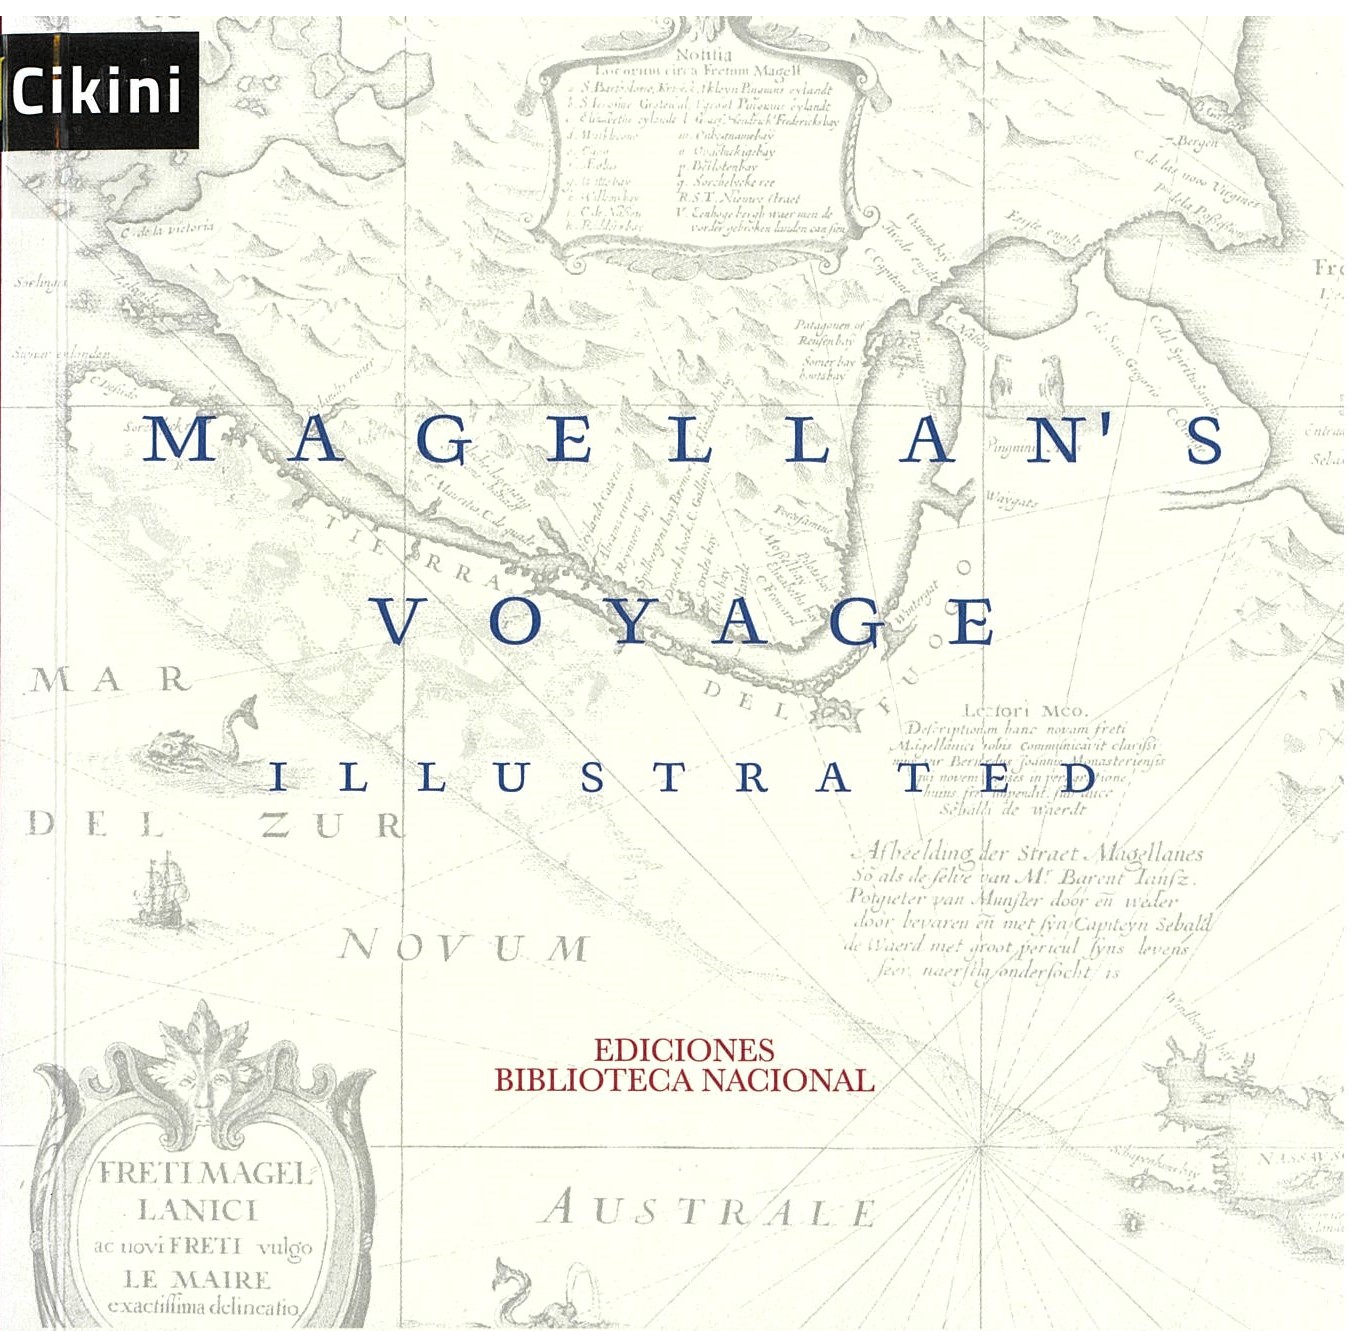 Magellan's voyage ilustrated